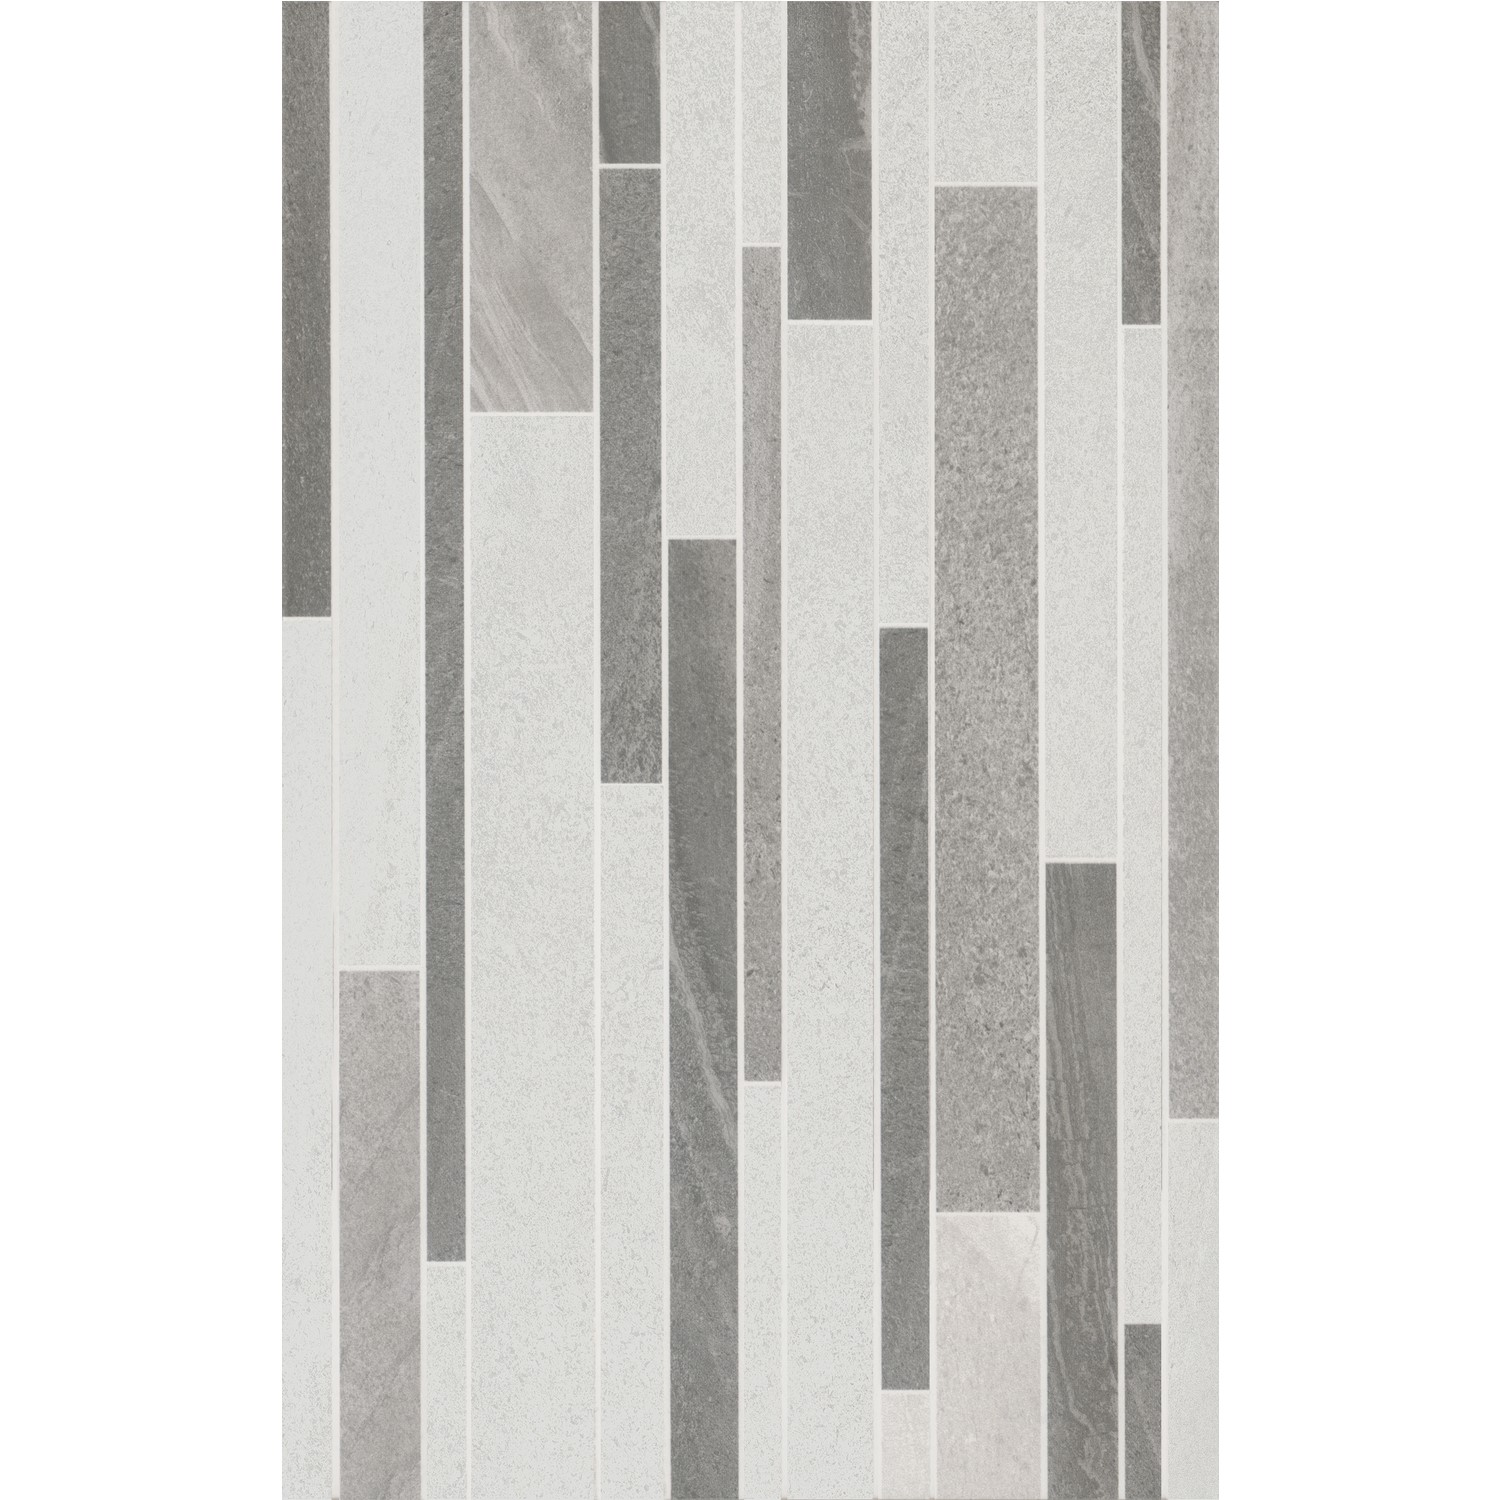 Grey Split Face Dcor Wall Tile 25 x 40cm - Zento